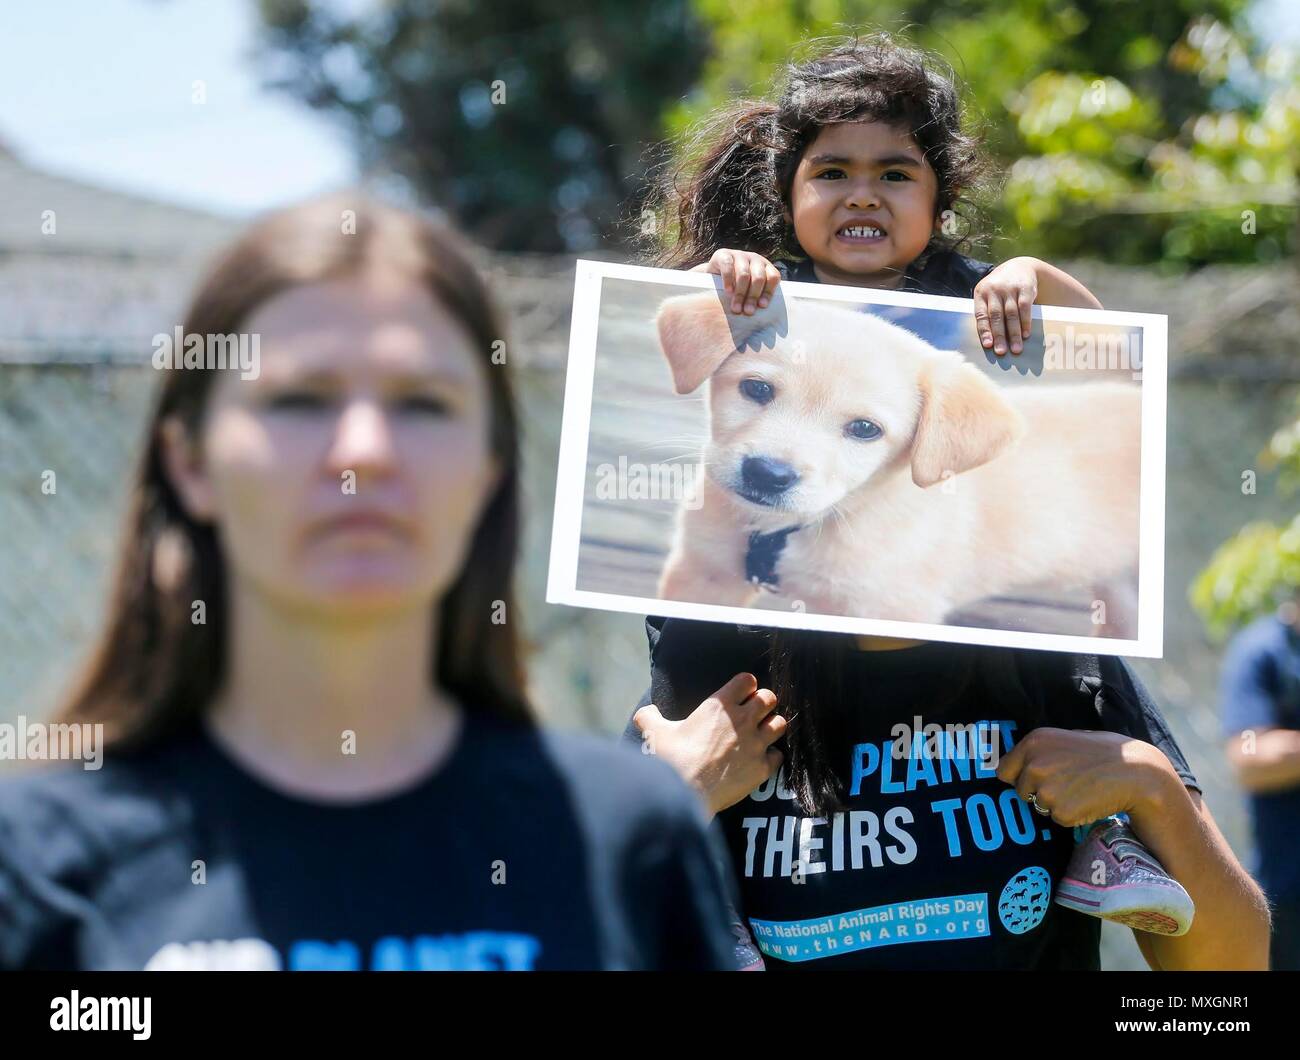 Los Angeles, USA. 3 juin, 2018. Recueillir des militants des droits de l'animal et de réciter la déclaration des droits de l'animal pour marquer la Journée nationale des droits des animaux à Los Angeles, aux États-Unis, le 3 juin 2018. Credit : Zhao Hanrong/Xinhua/Alamy Live News Banque D'Images